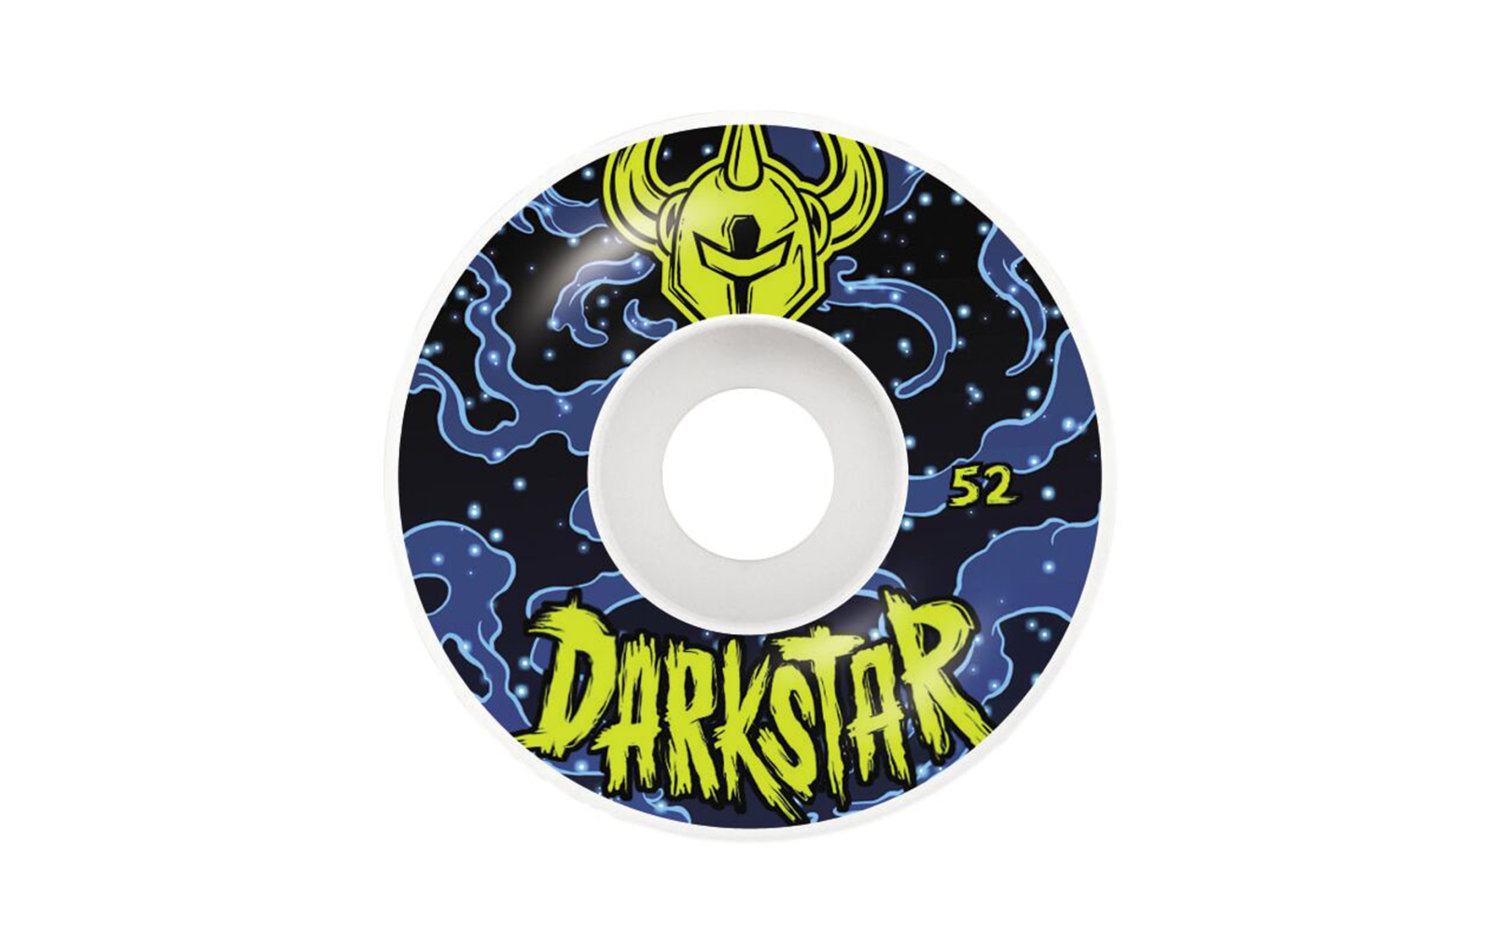 Darkstar Zodiak Wheel 52mm (10112309)